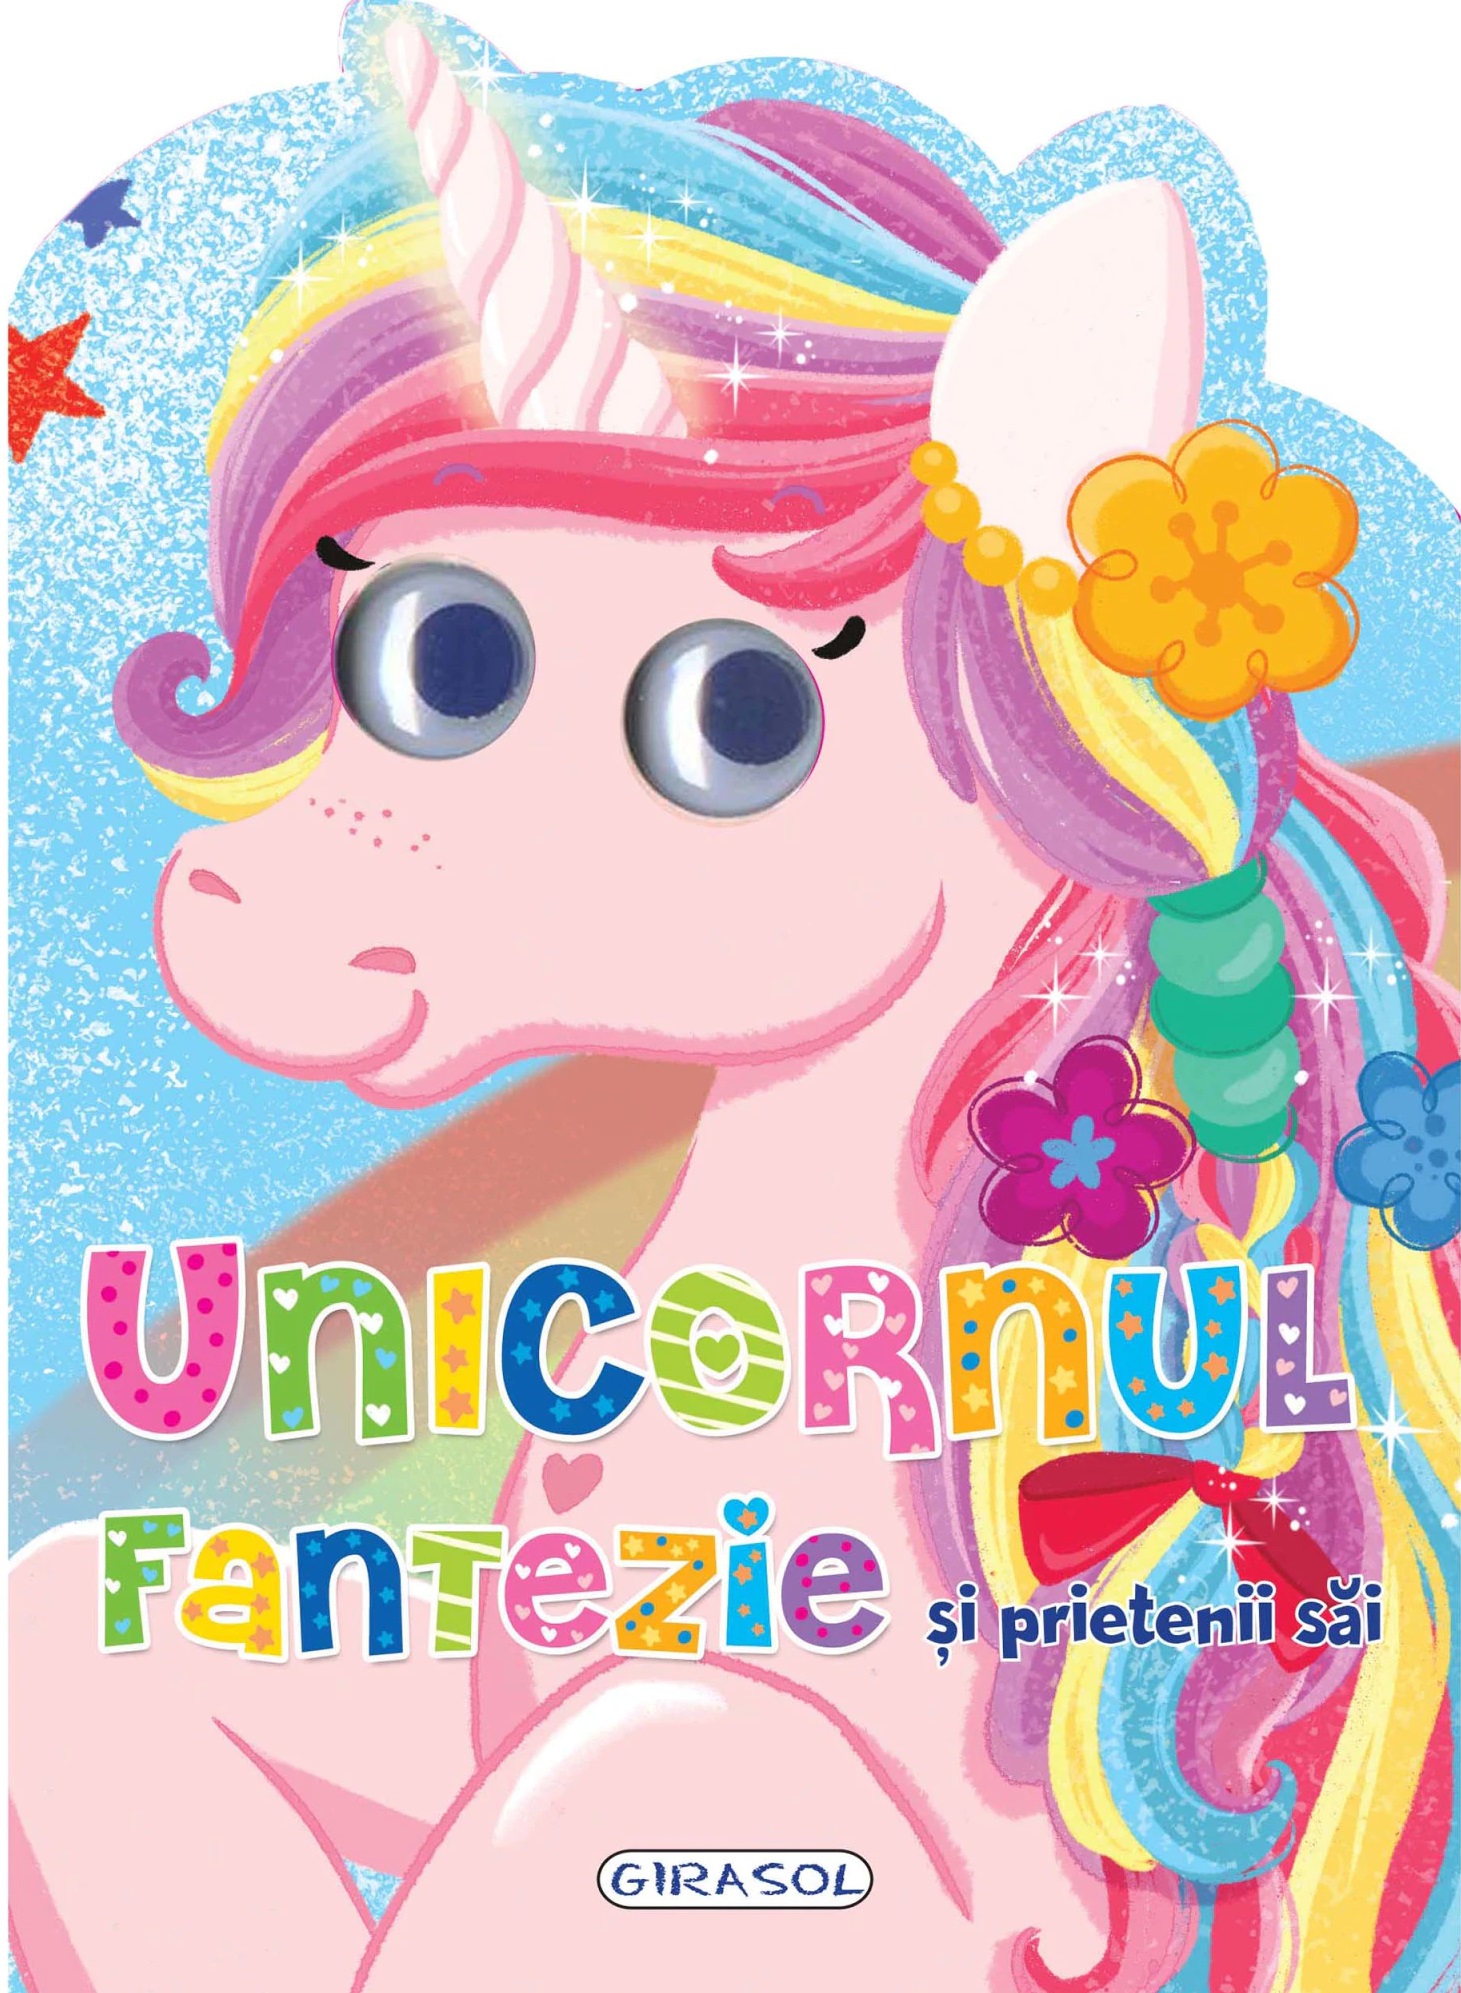 Unicornul Fantezie si prietenii sai | adolescenți imagine 2022